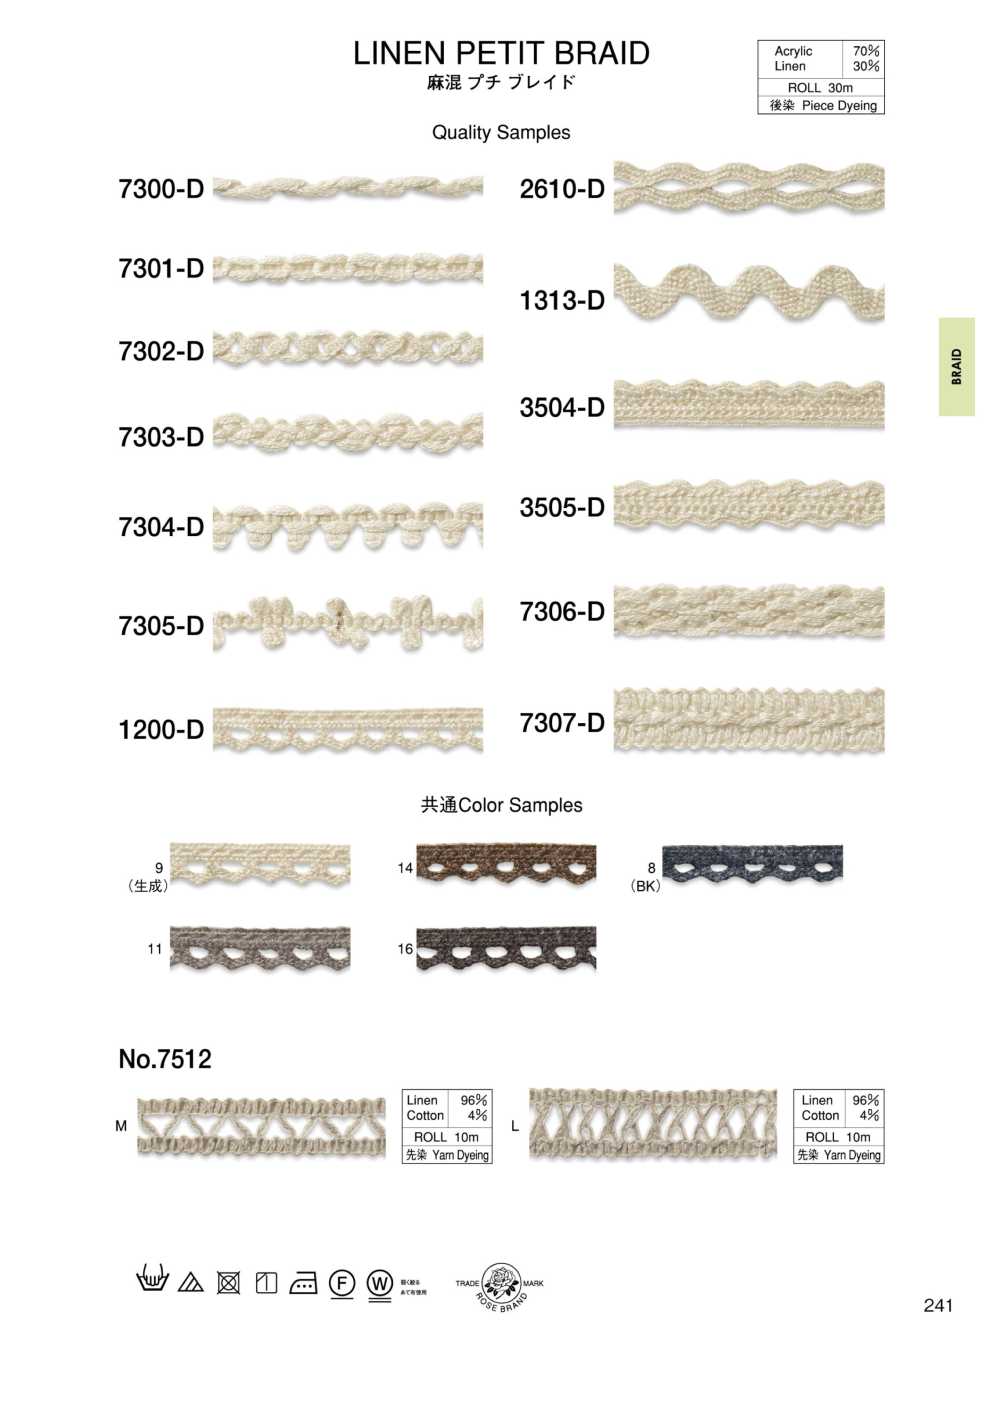 1200-D Linen Blend Petite Braid[Ribbon Tape Cord] ROSE BRAND (Marushin)